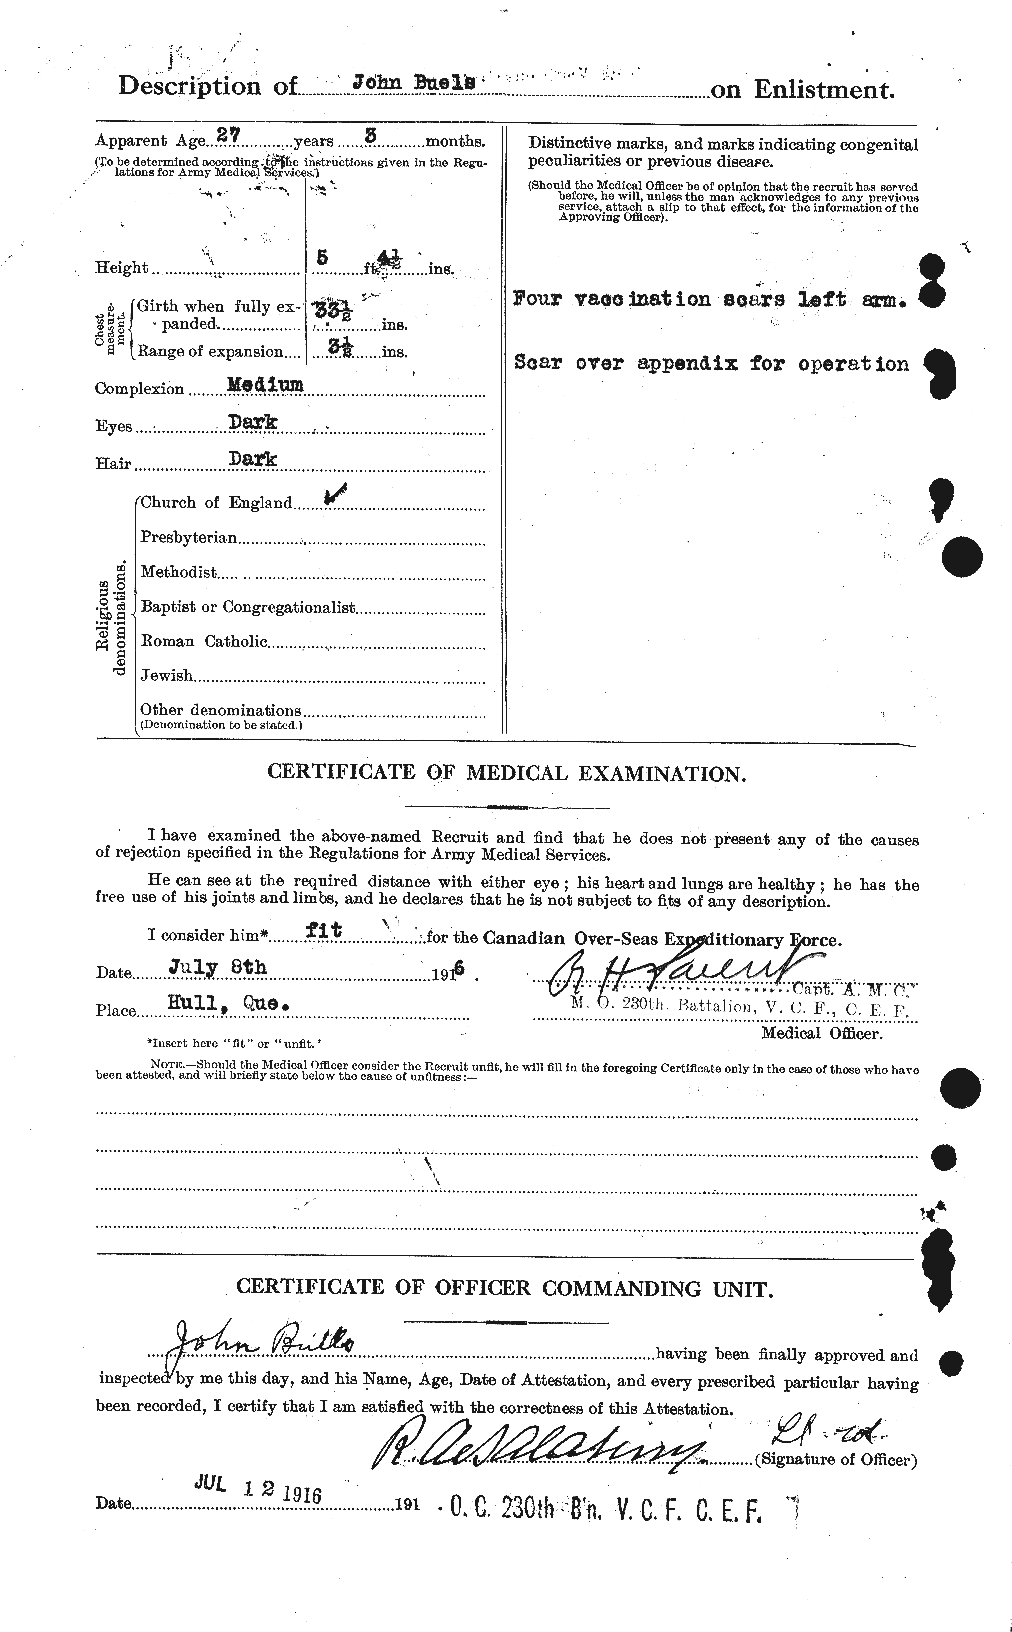 Dossiers du Personnel de la Première Guerre mondiale - CEC 271421b